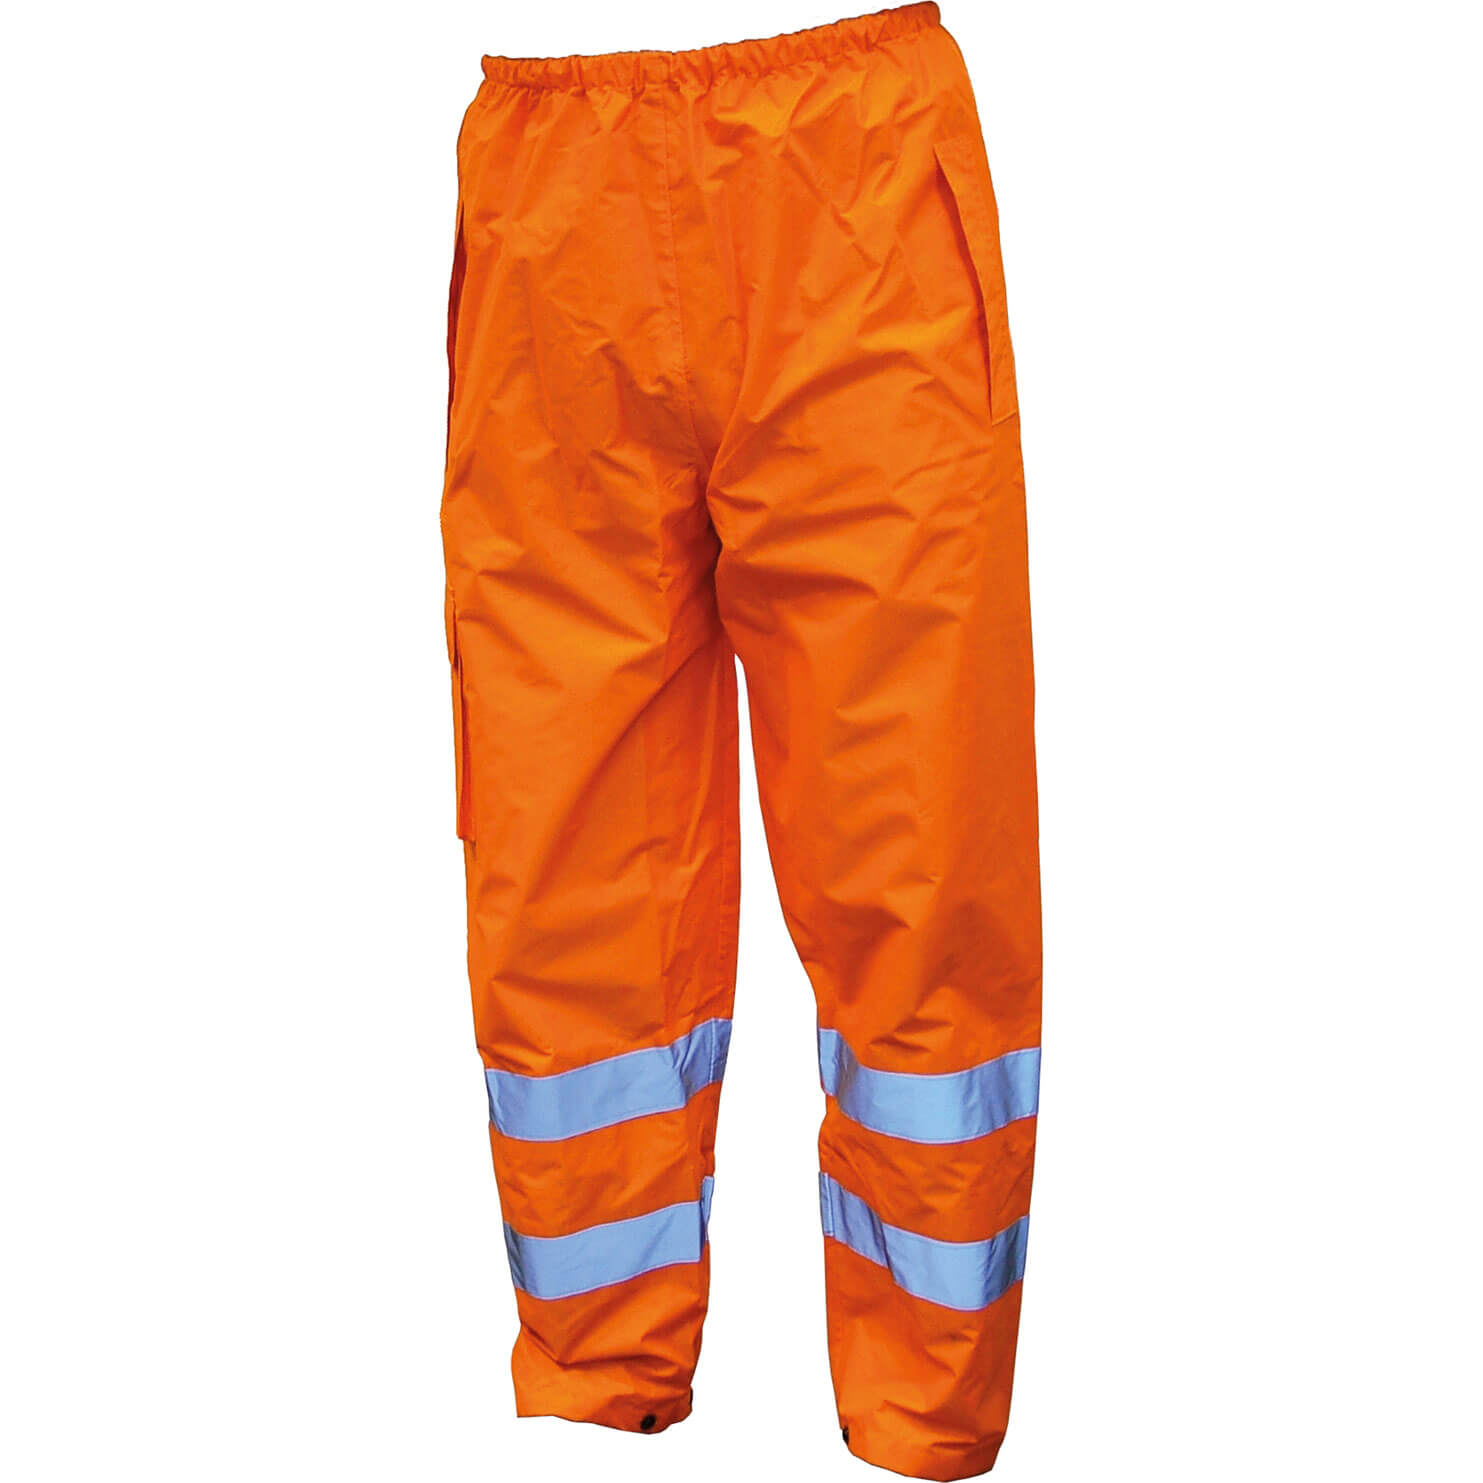 Строительные штаны оранжевые. Оранжевые штаны туризм. Строительные штаны оранжевые со светодиодами. Оранжевые штаны игра. Оранжевые штаны купить